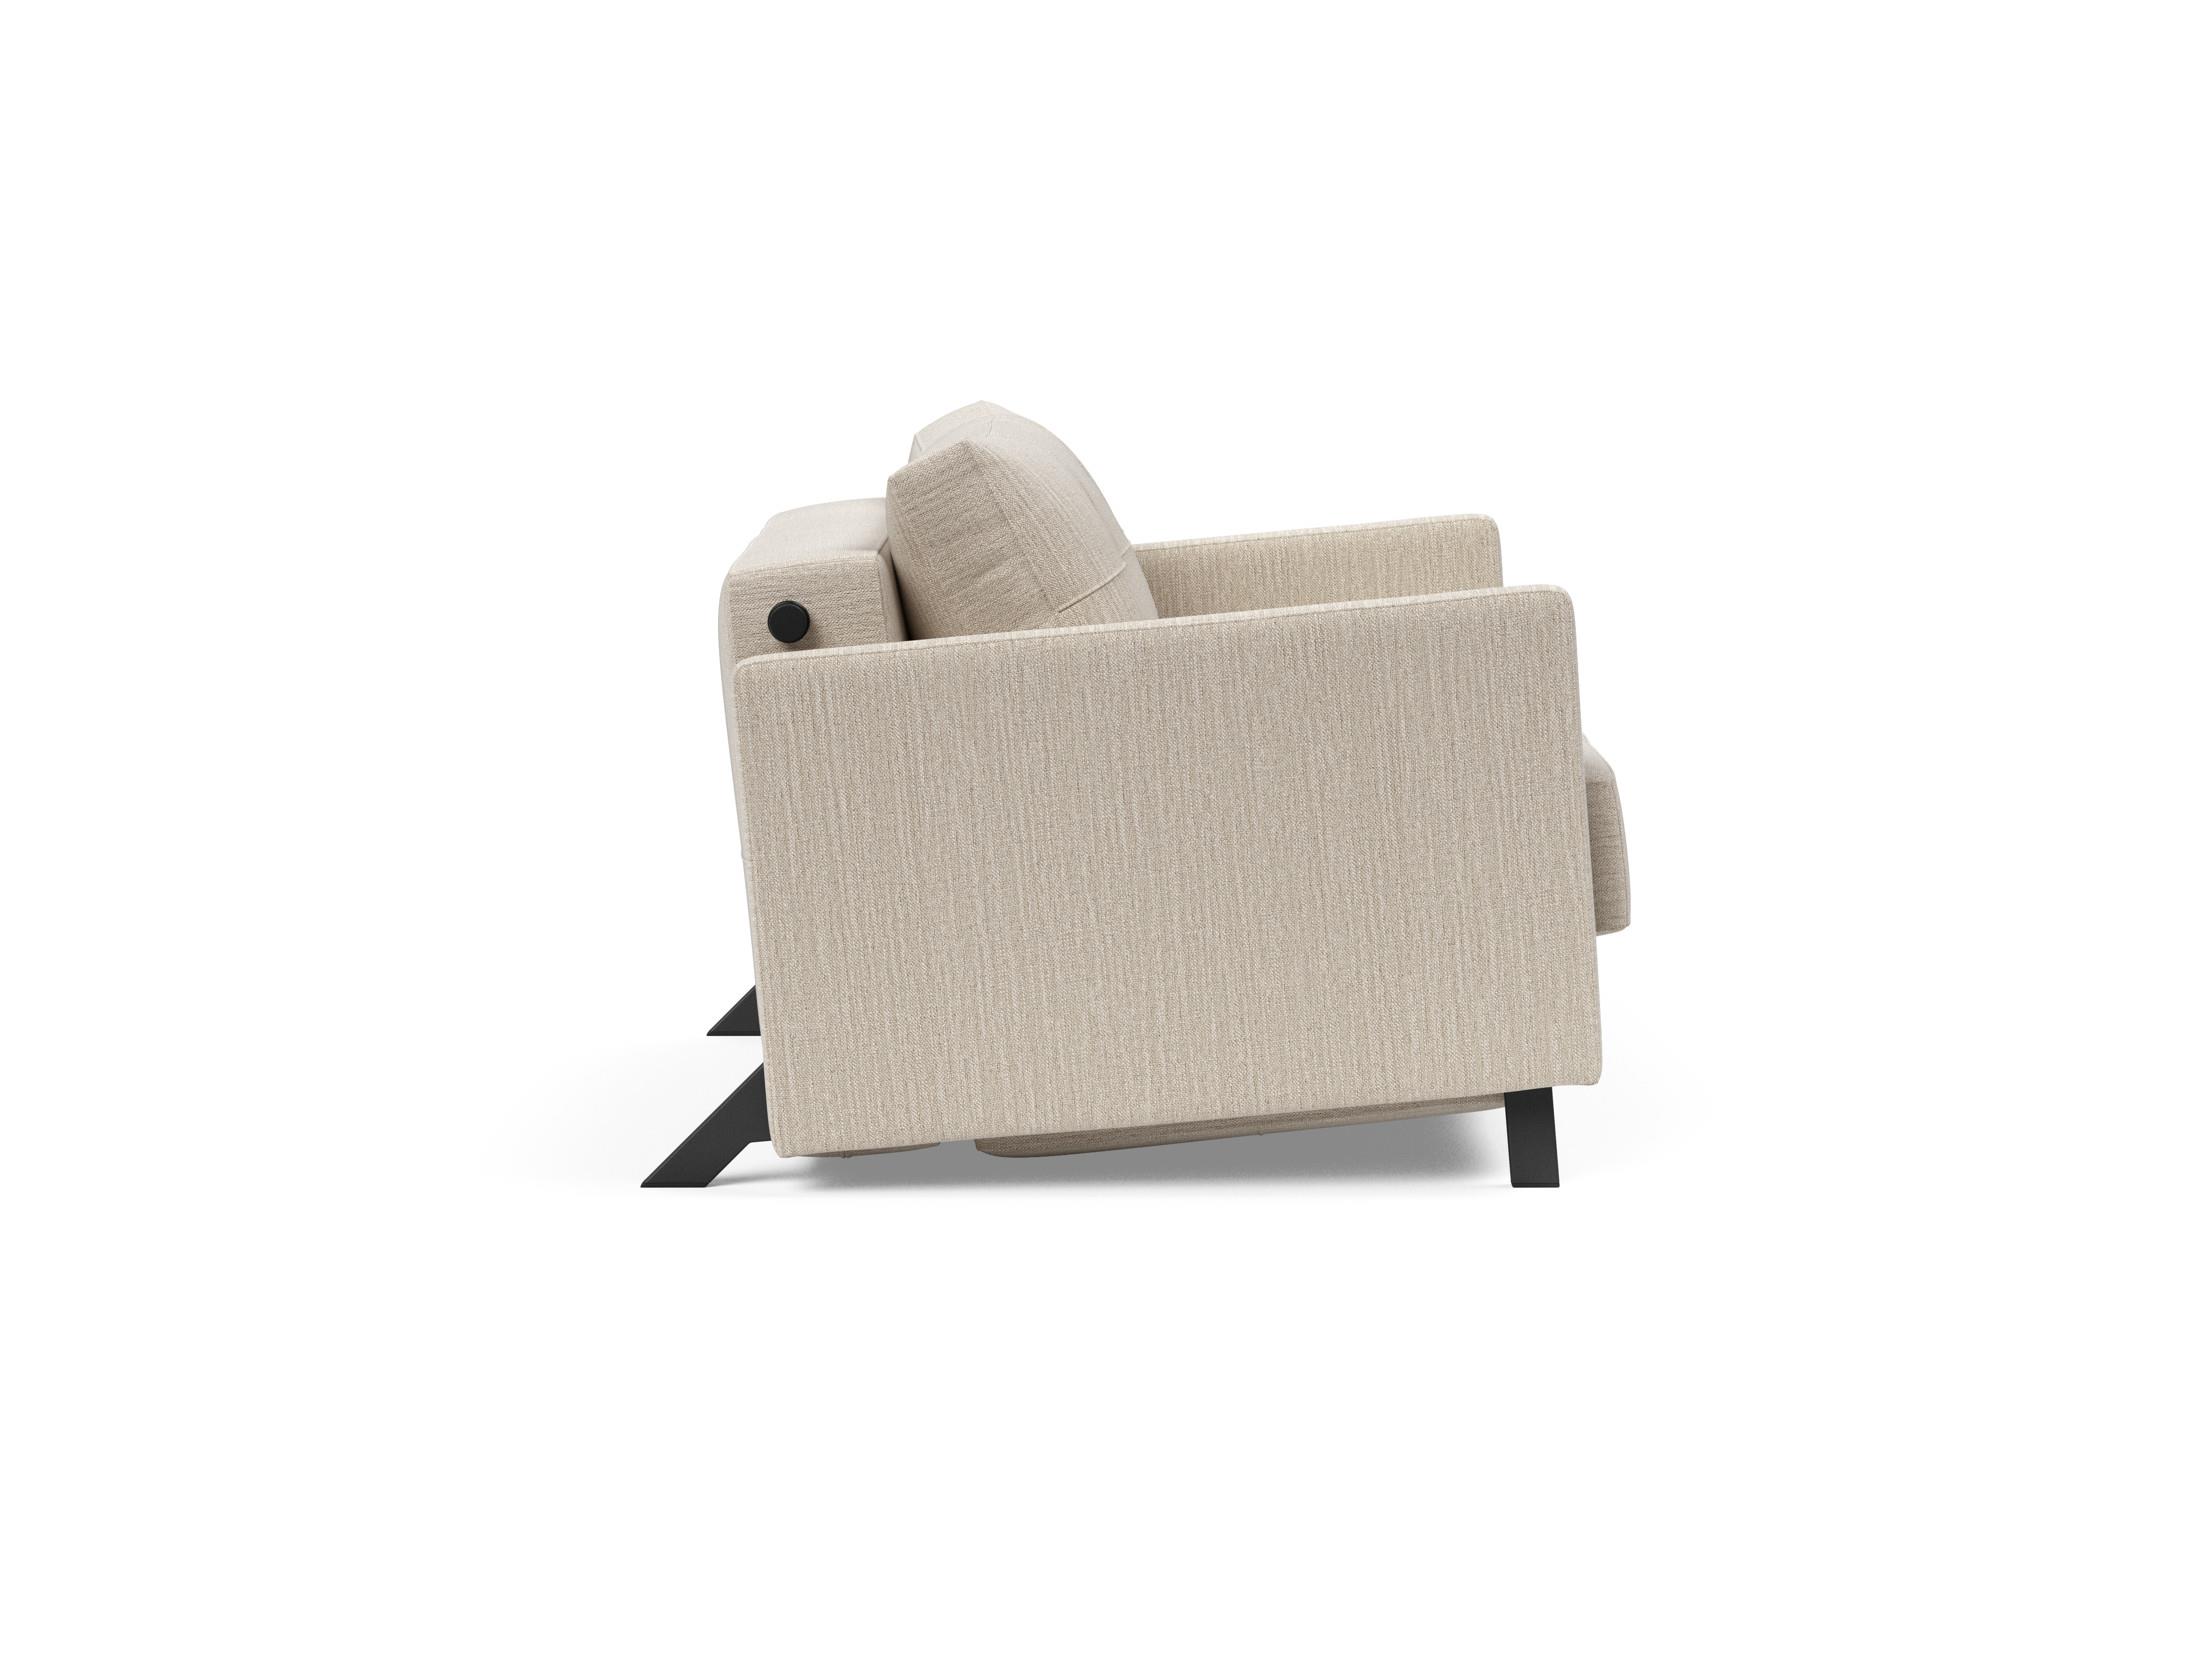 Кресло-кровать Cubed 90 Innovation. Кресло Innovation Cubed. Innovation Cubed кресло кровать. Кресло Cubed Deluxe. Cubed 140